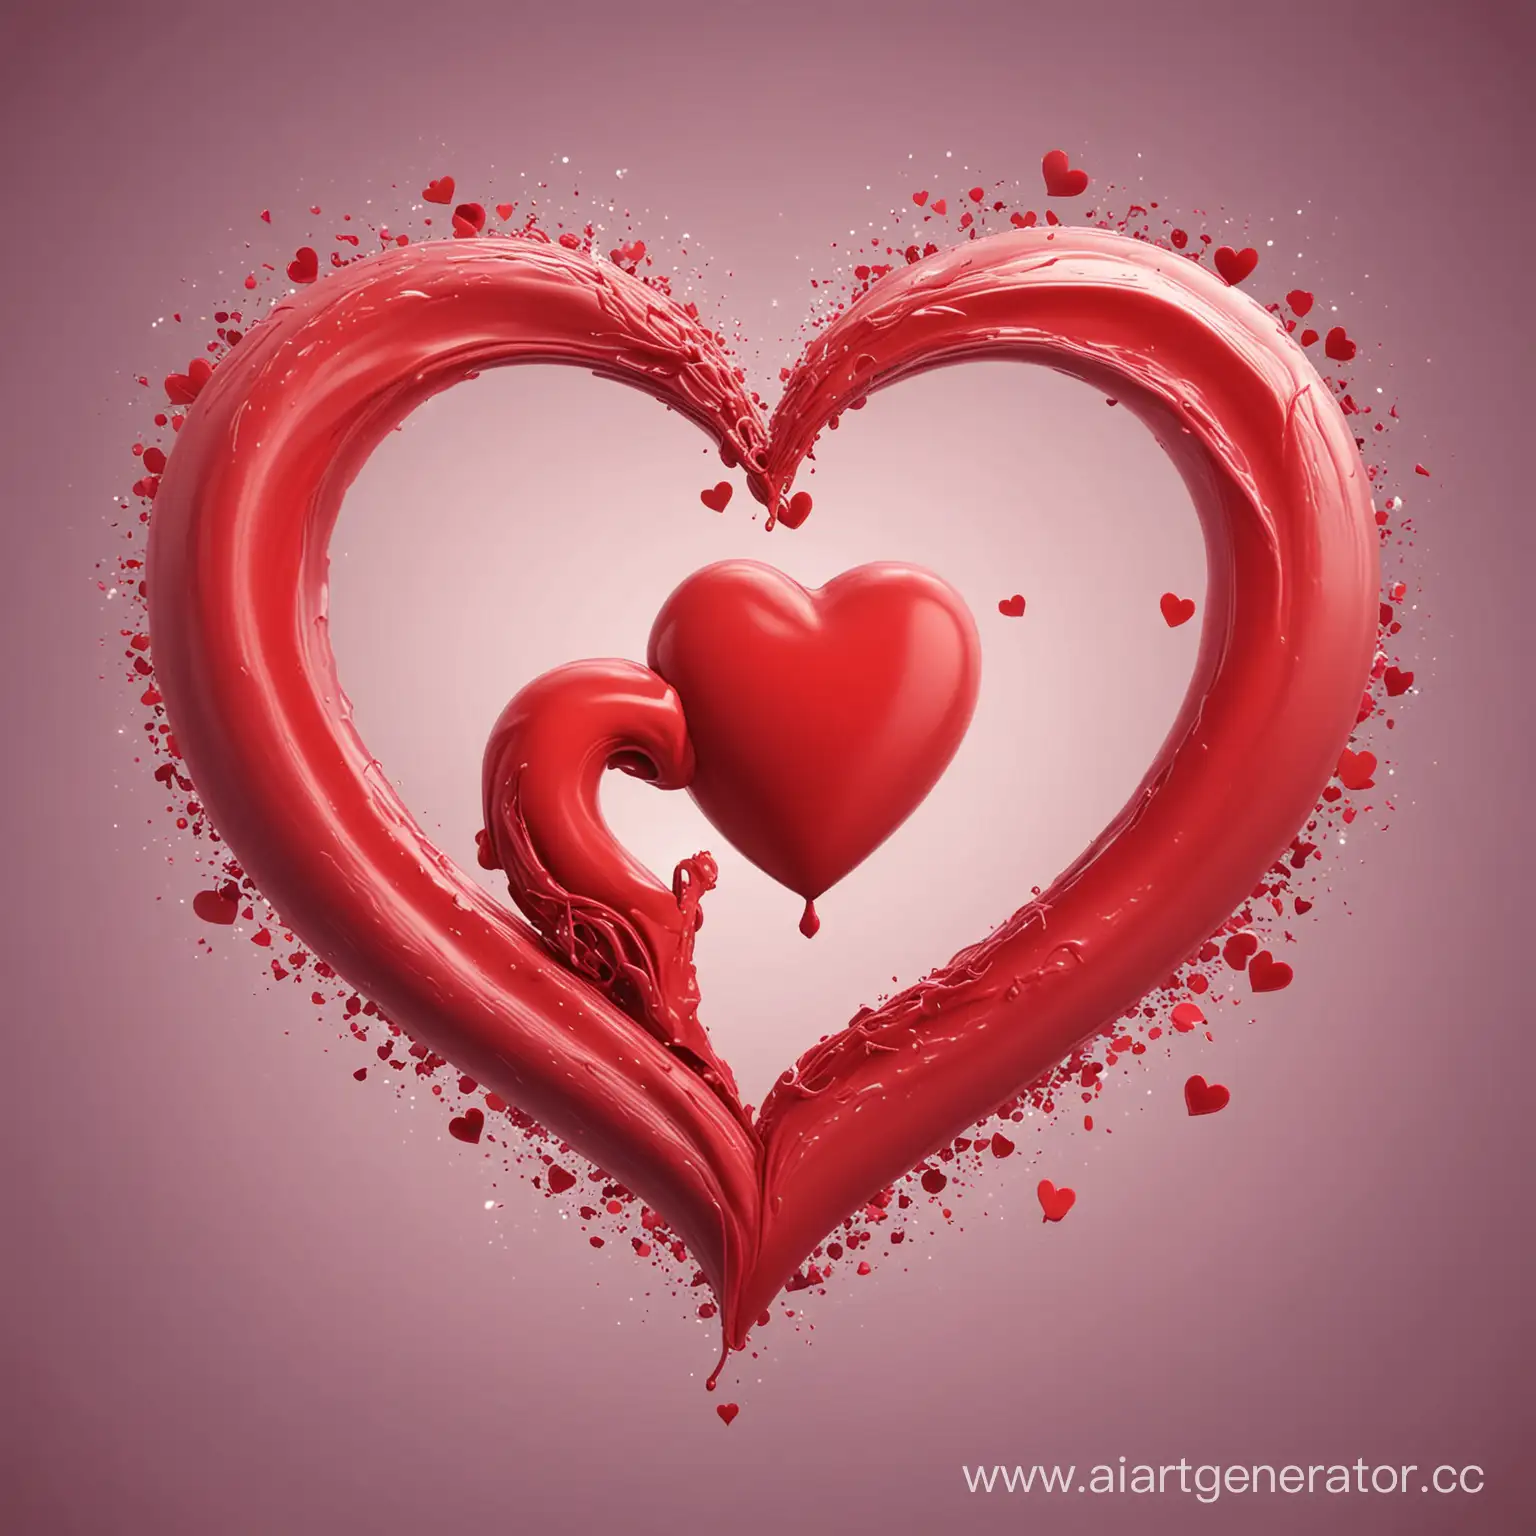 Сердце и любовь, романтика